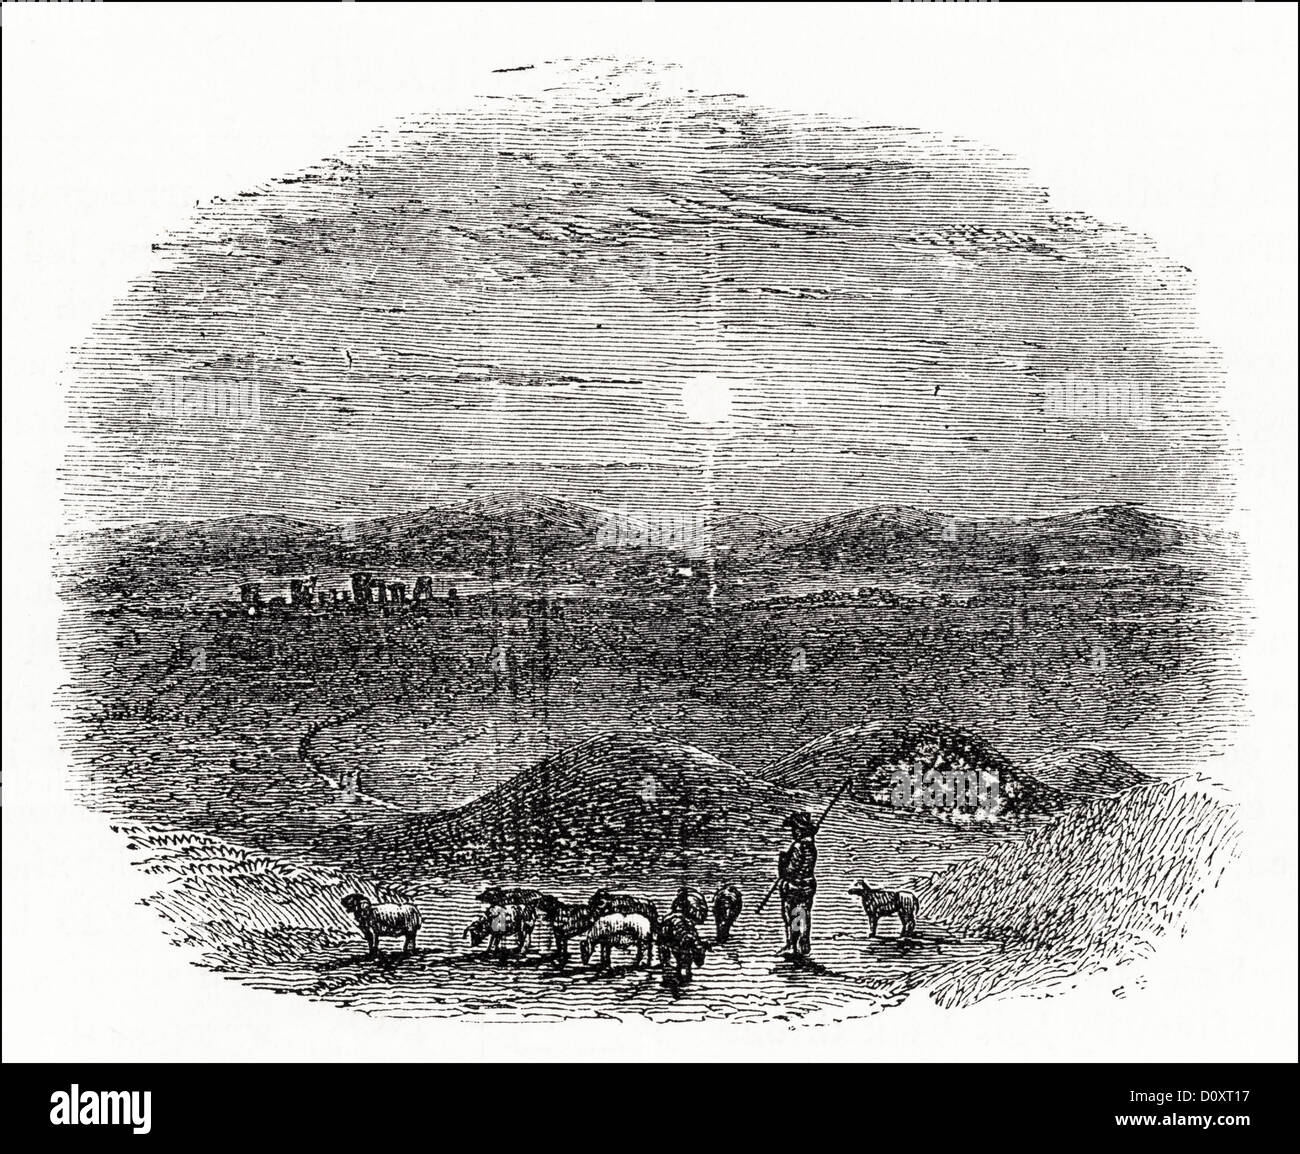 Viktorianischen Holzschnitt, Kupferstich ca. 1864 zeigt Sarum Plain mit Hirten und Herde von Schafen Blick in Richtung Stonehenge. Stockfoto